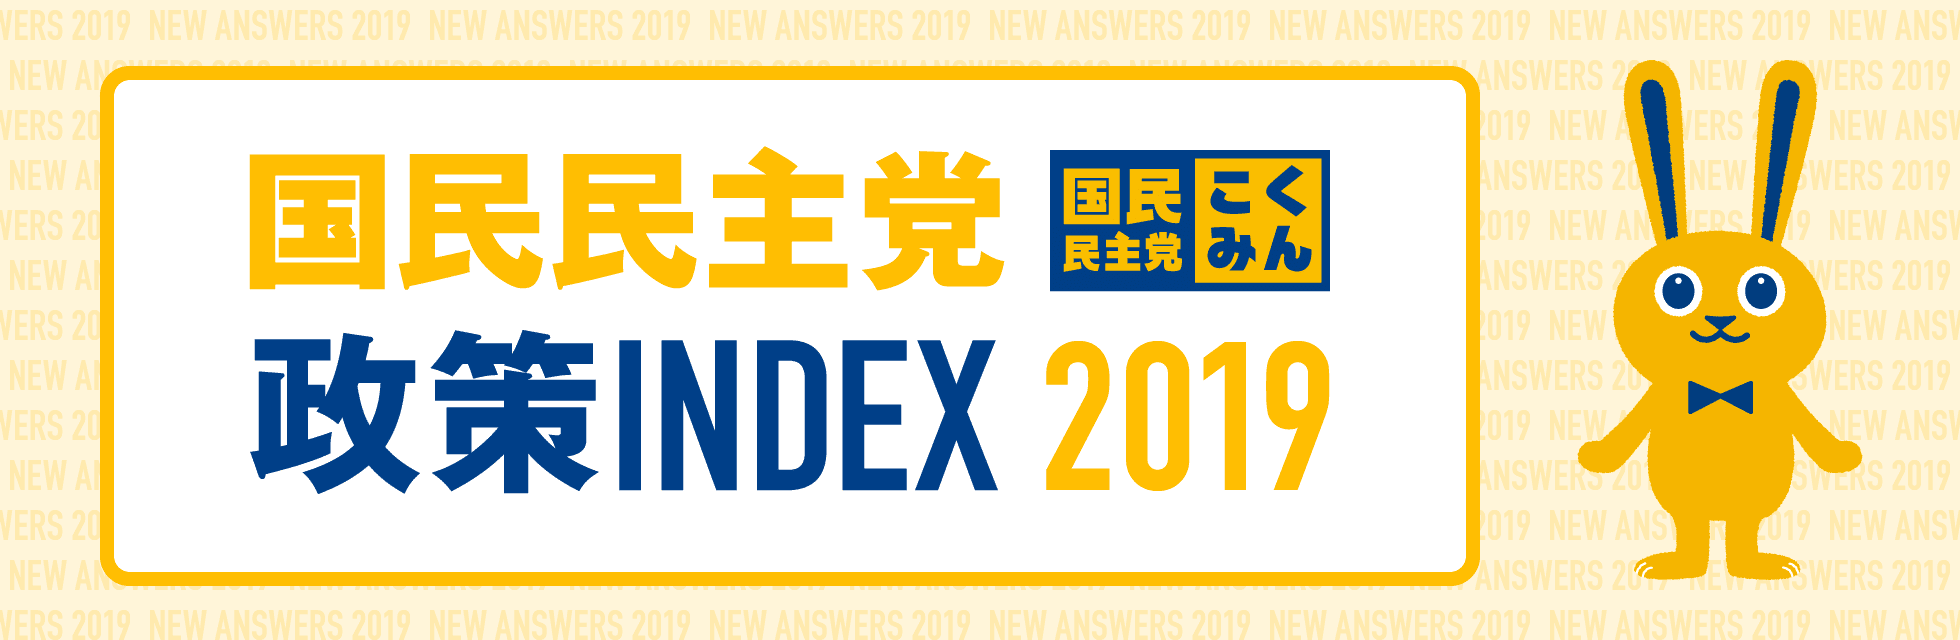 国民民主党 政策INDEX 2019